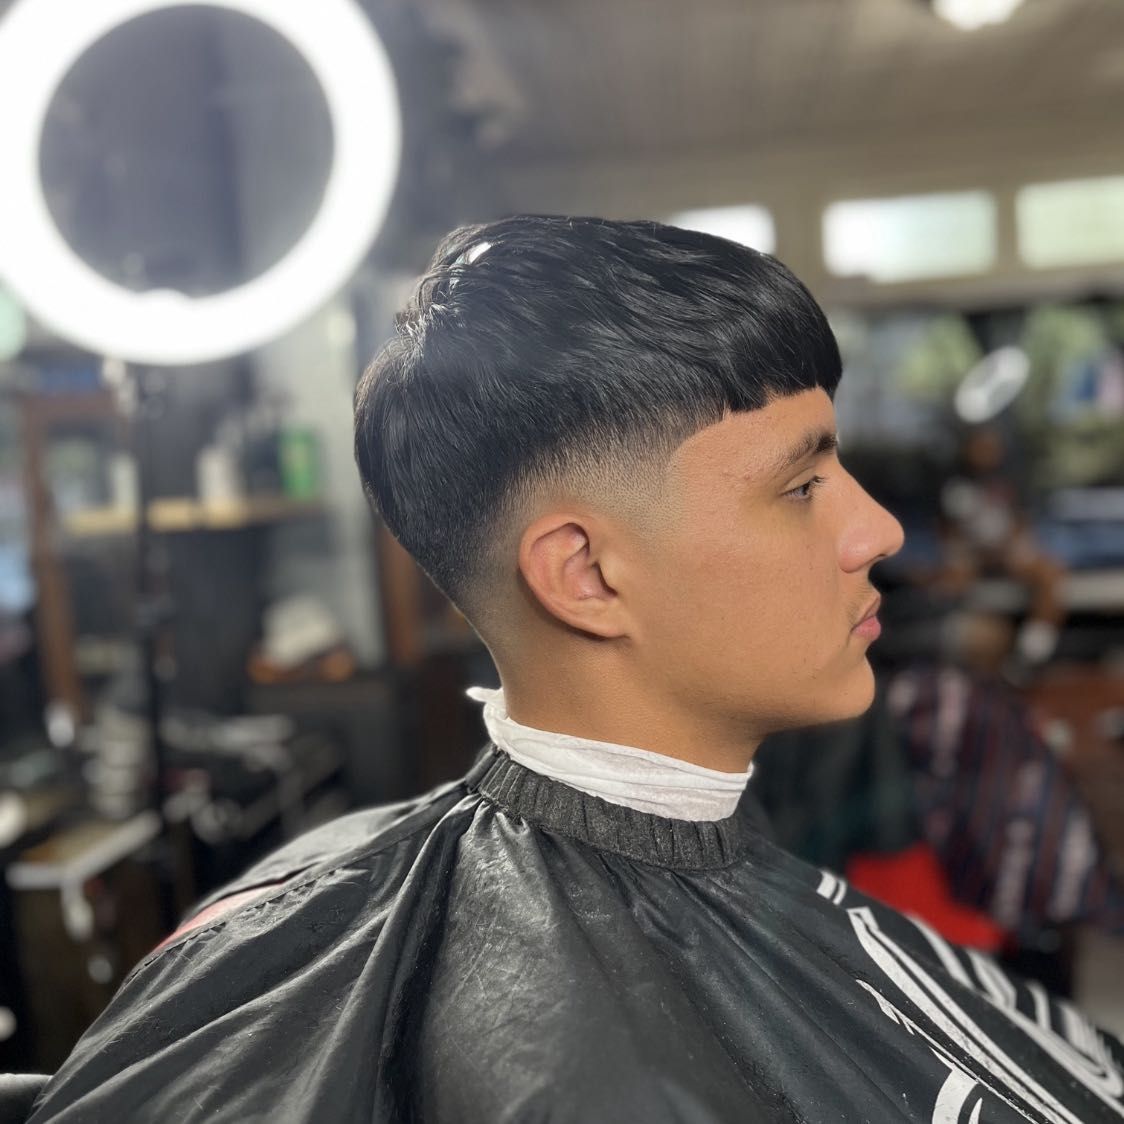 Teen Haircut (13+) portfolio